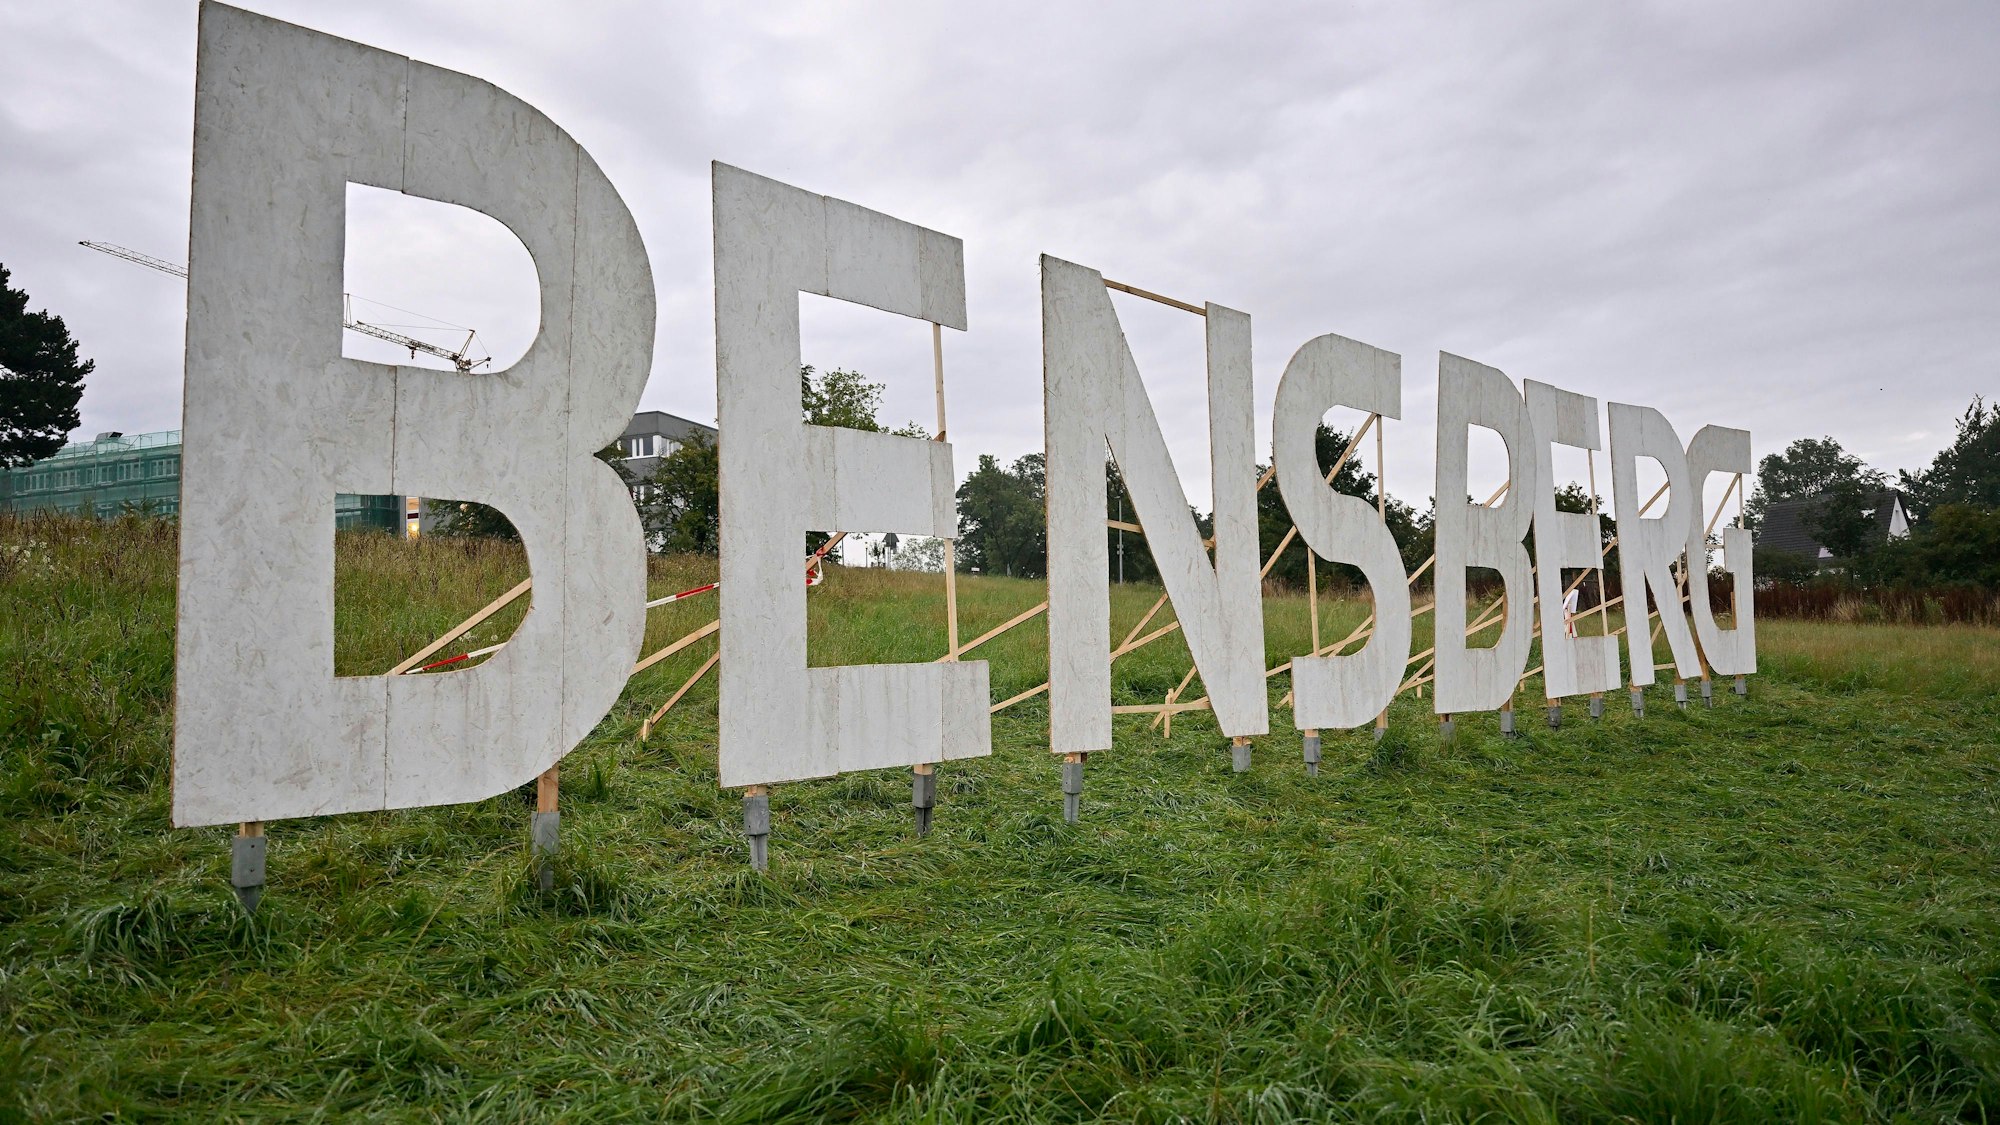 Au einer Wiese sind acht übergroße Buchstaben BENSBERG aufgestellt.